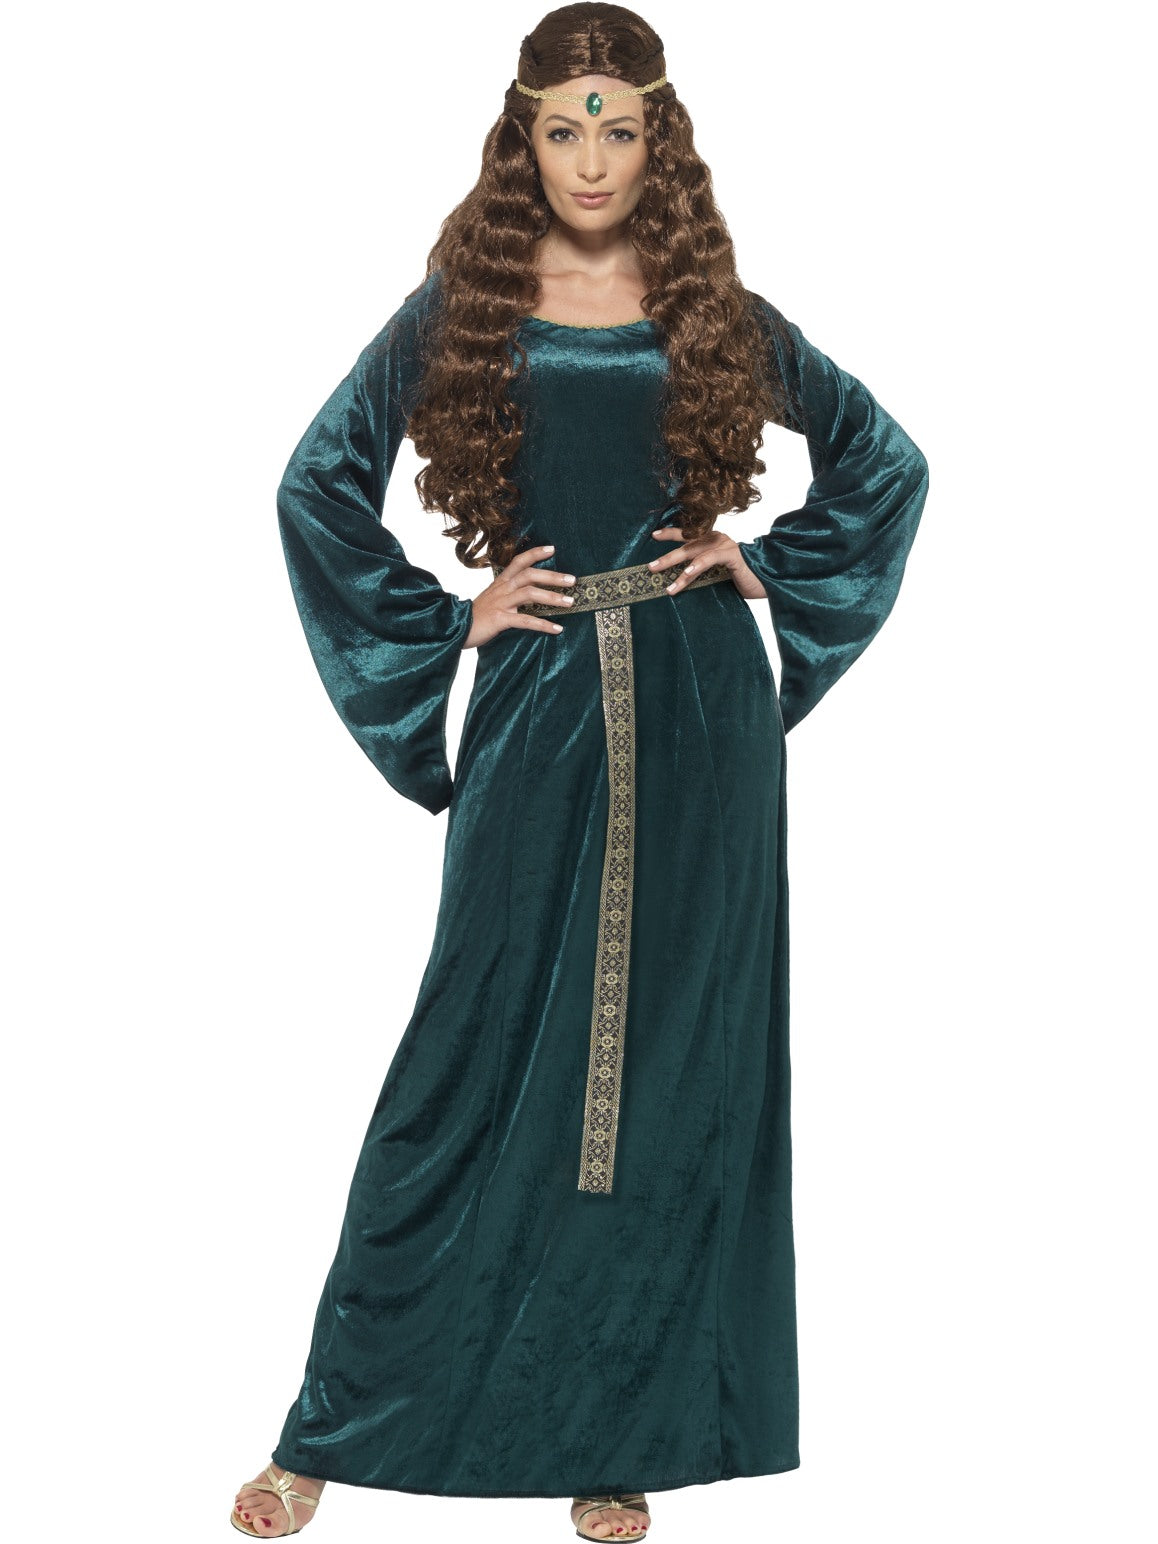 Medieval Maiden Ladies Costume